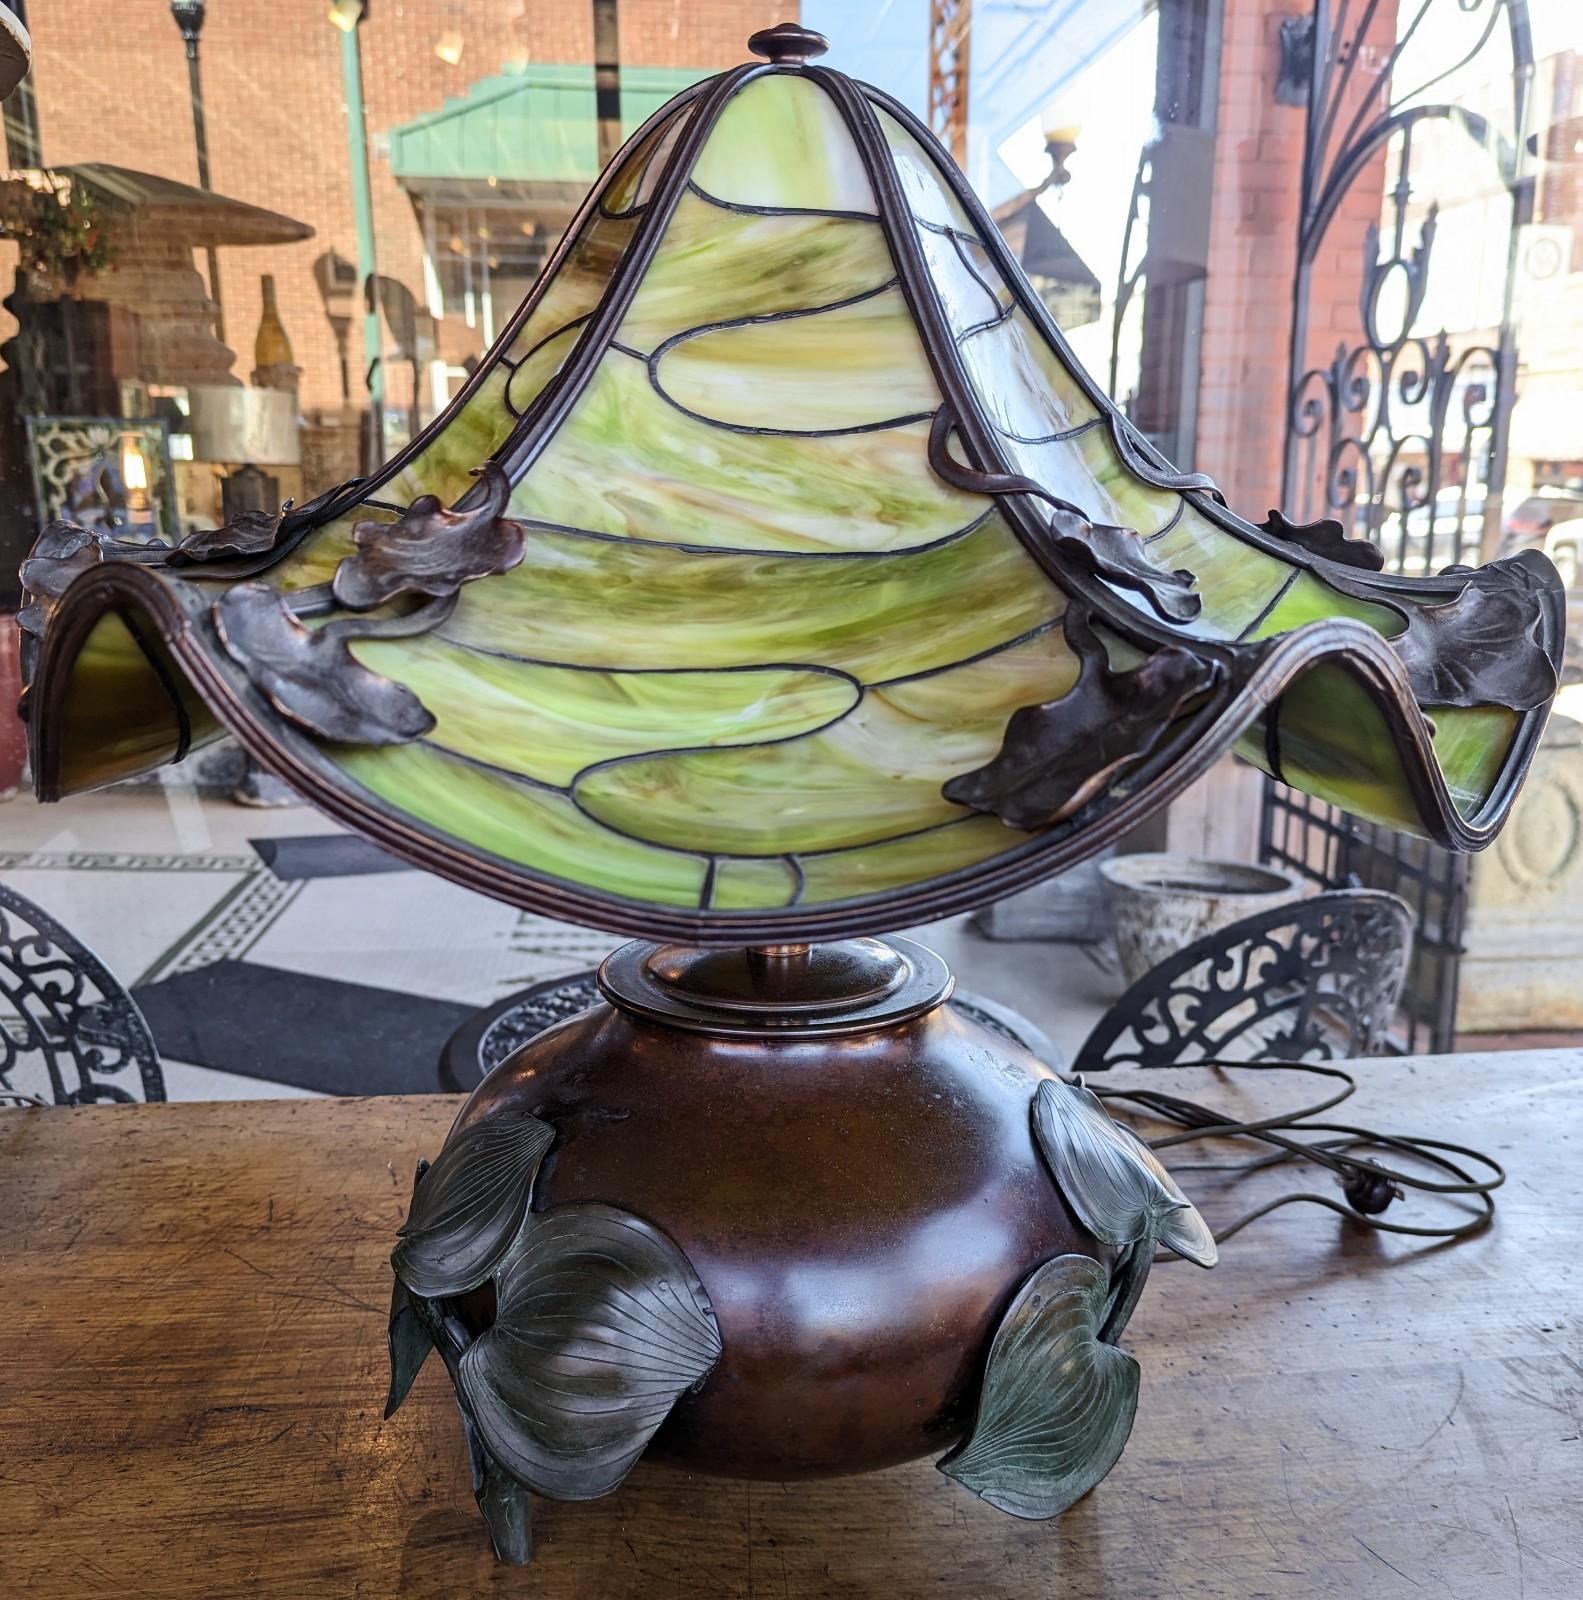 Superbe lampe ancienne en bronze de l'Arte Antiques avec un grand abat-jour en verre de scories vertes qui attire l'attention. Magnifiquement fabriquée à la main, elle constitue une pièce de conversation parfaite pour votre intérieur grâce à son